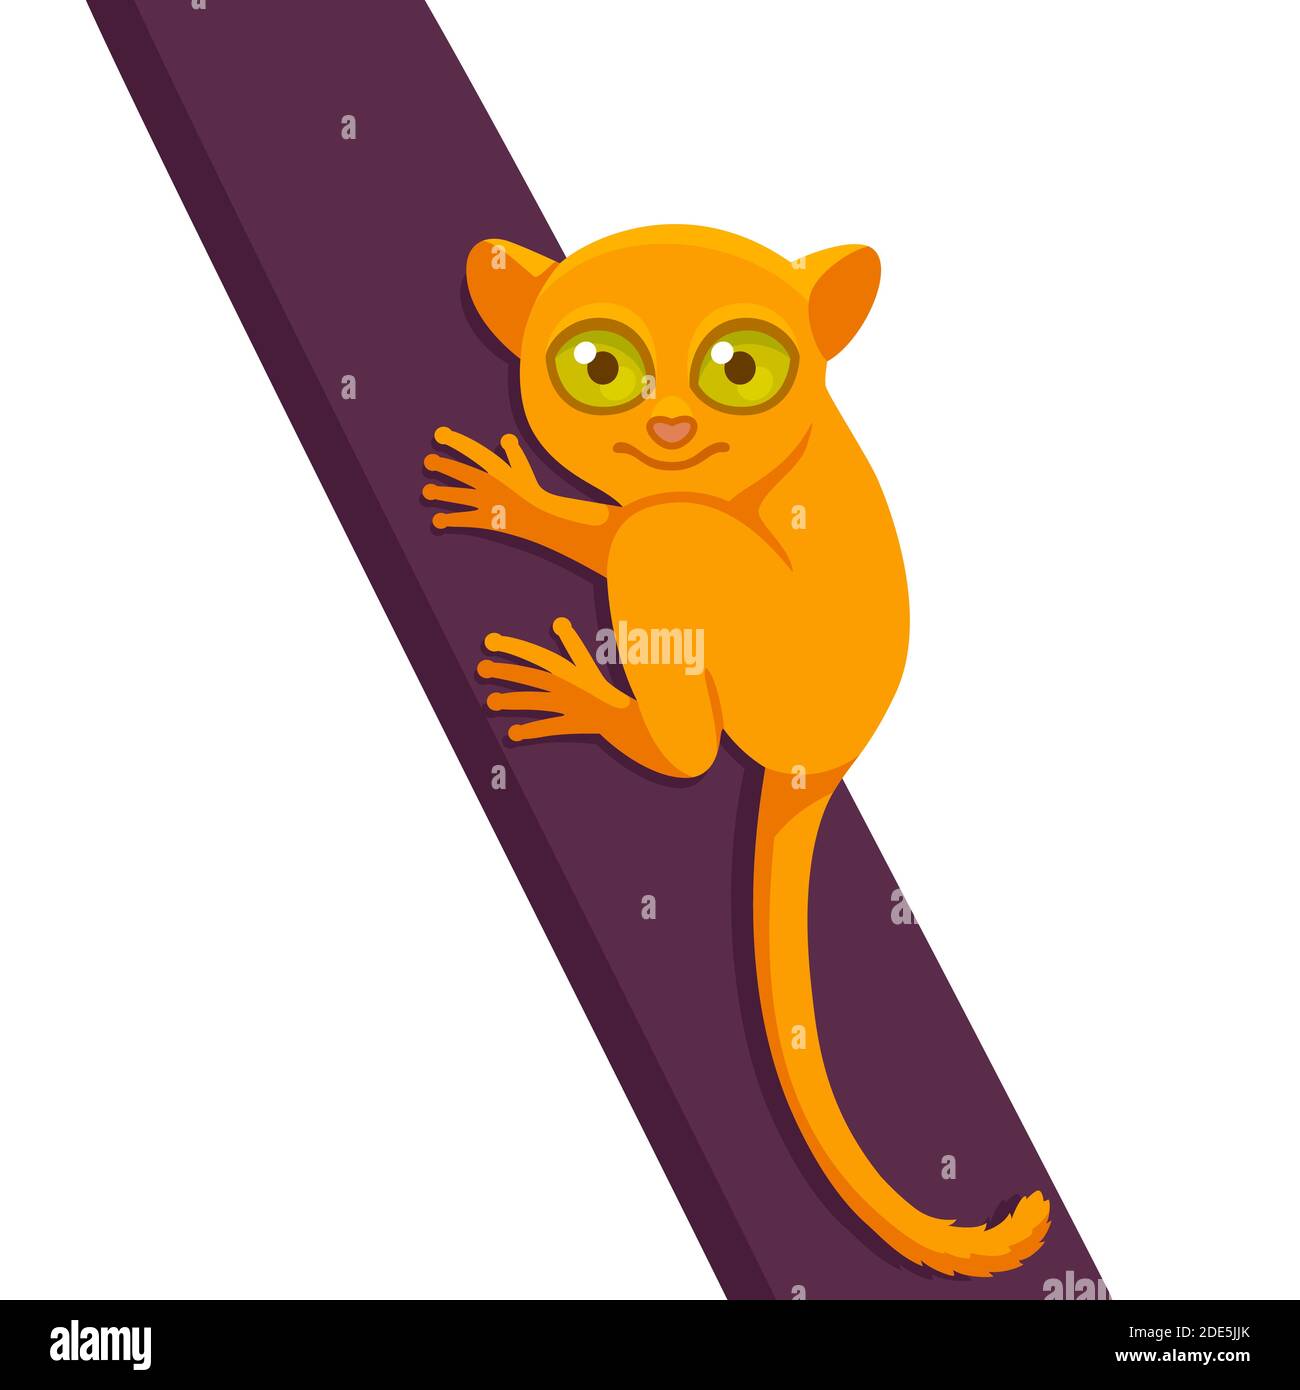 Joli dessin de singe tasier, animal des Philippines. Illustration de clip art vectoriel simple. Illustration de Vecteur